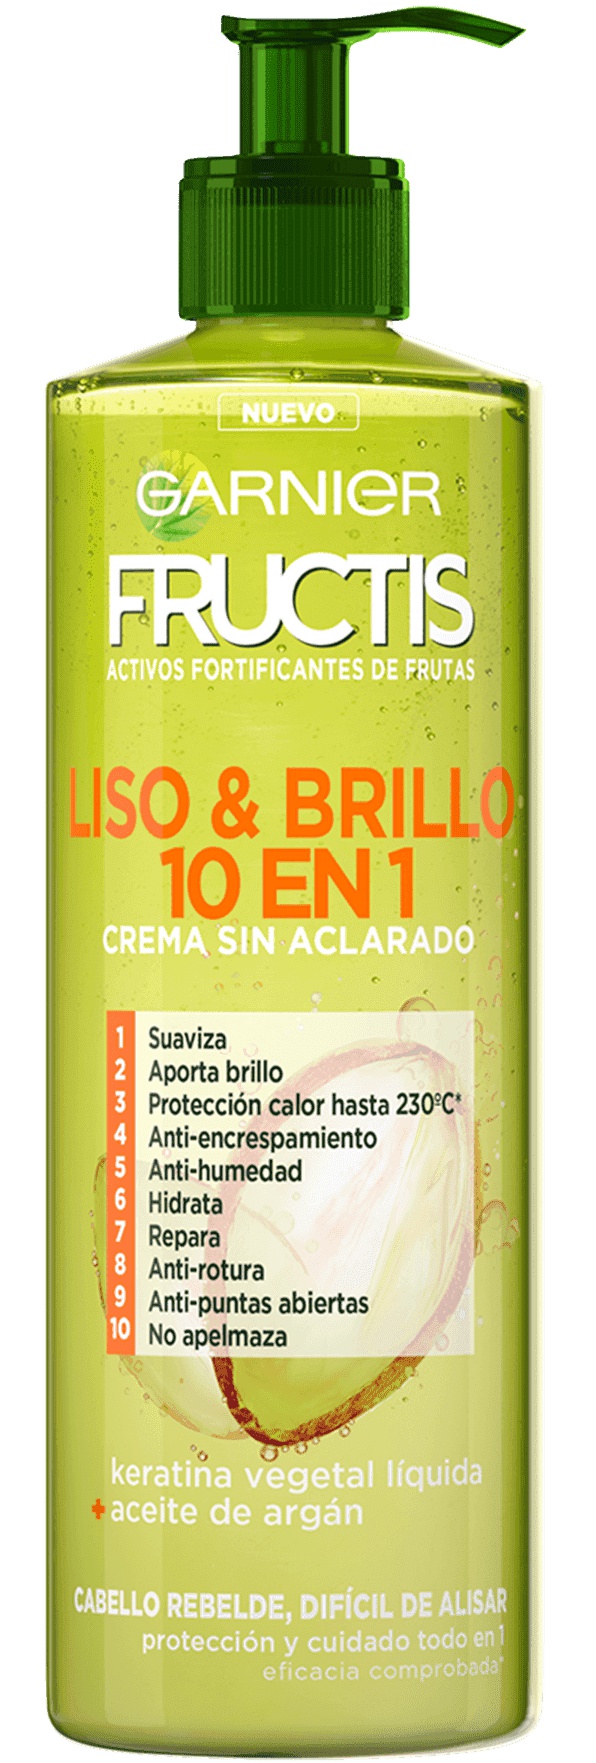 Garnier Fructis Crema Sin Aclarado 10 En 1 Fuerza & Brillo